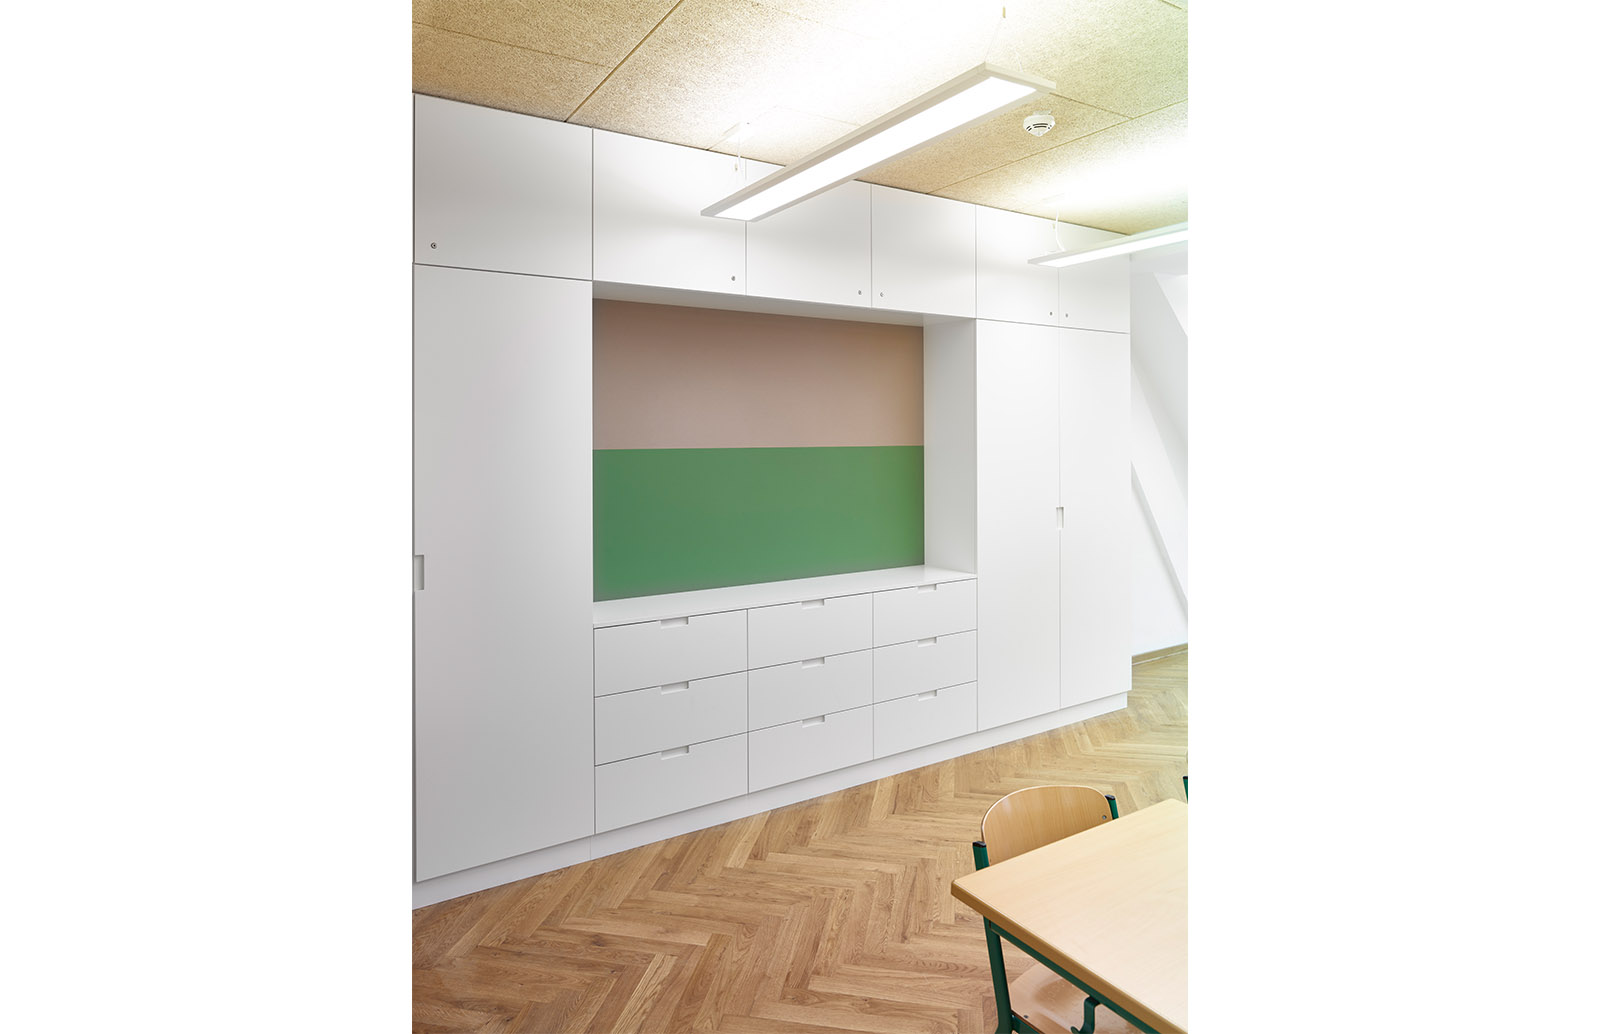 Dachsanierung Ursulinen Realschule Landshut | 2020